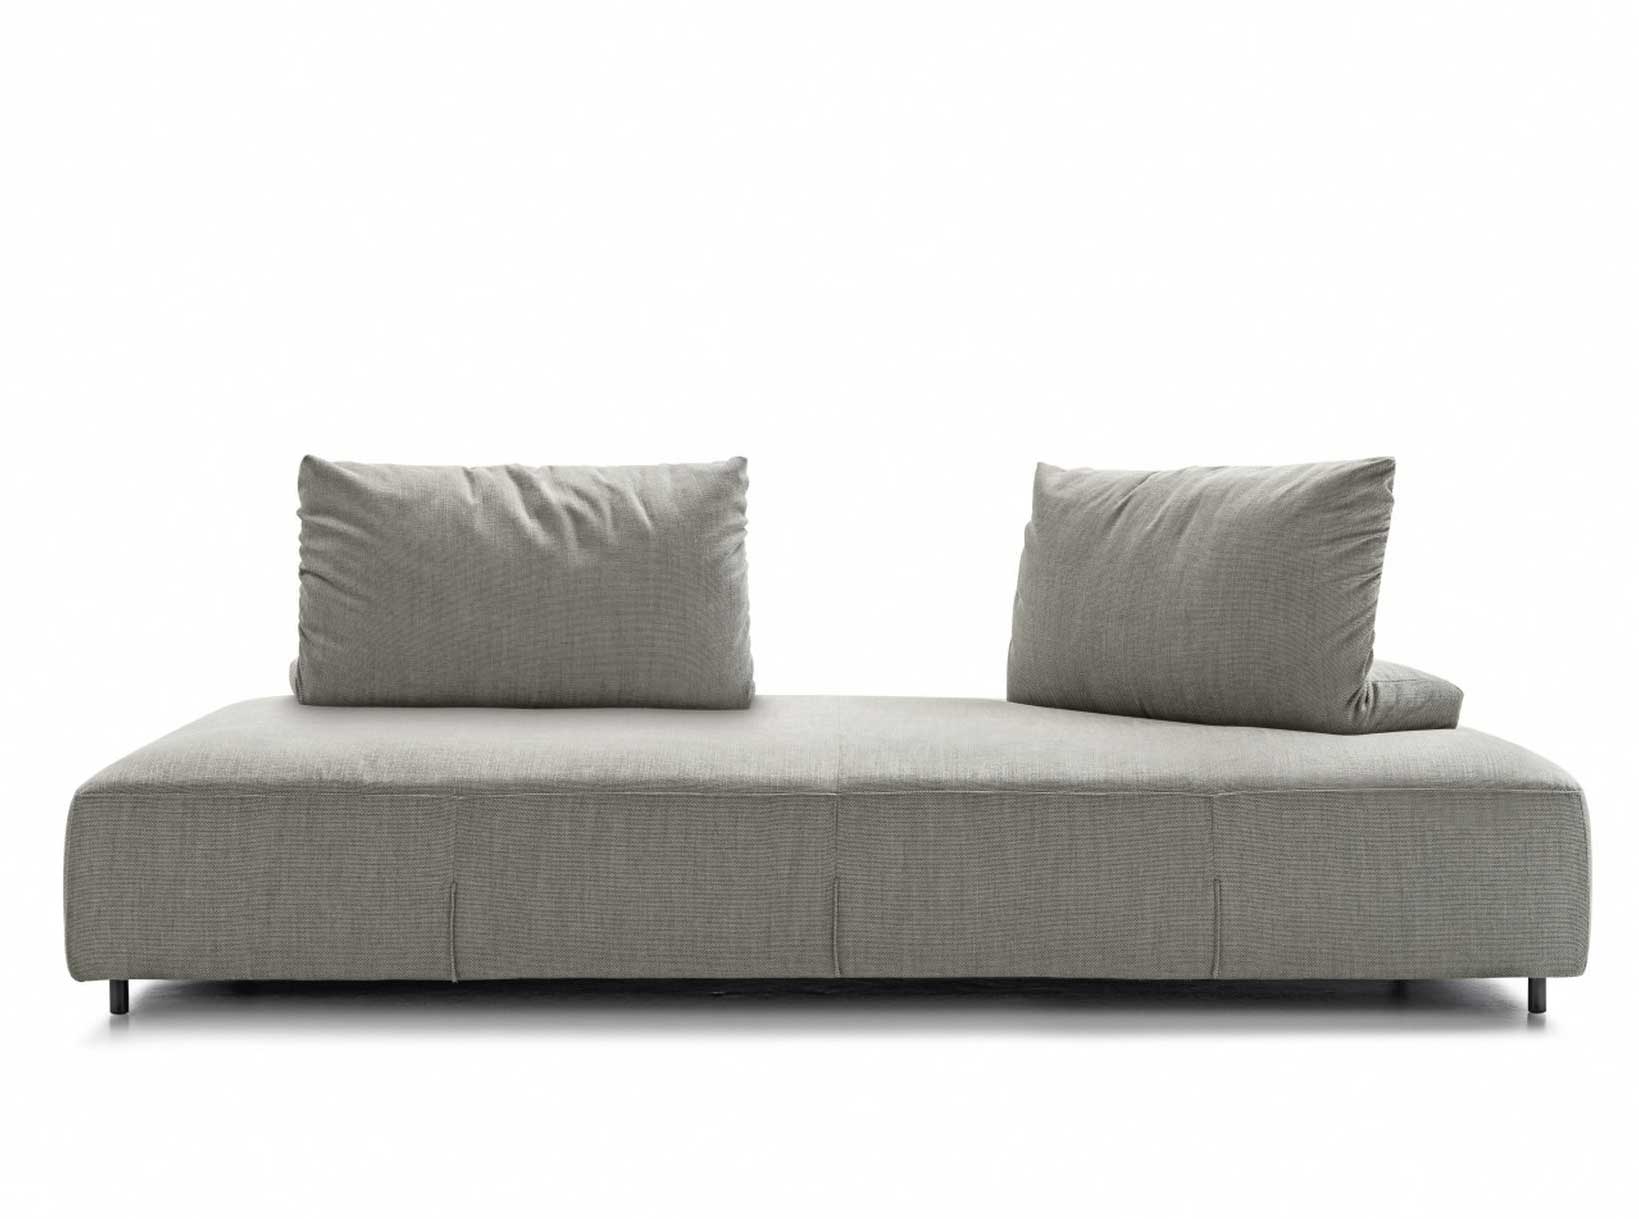 Italian Modern Sofa Bresso by Nicoline - MIG Furniture